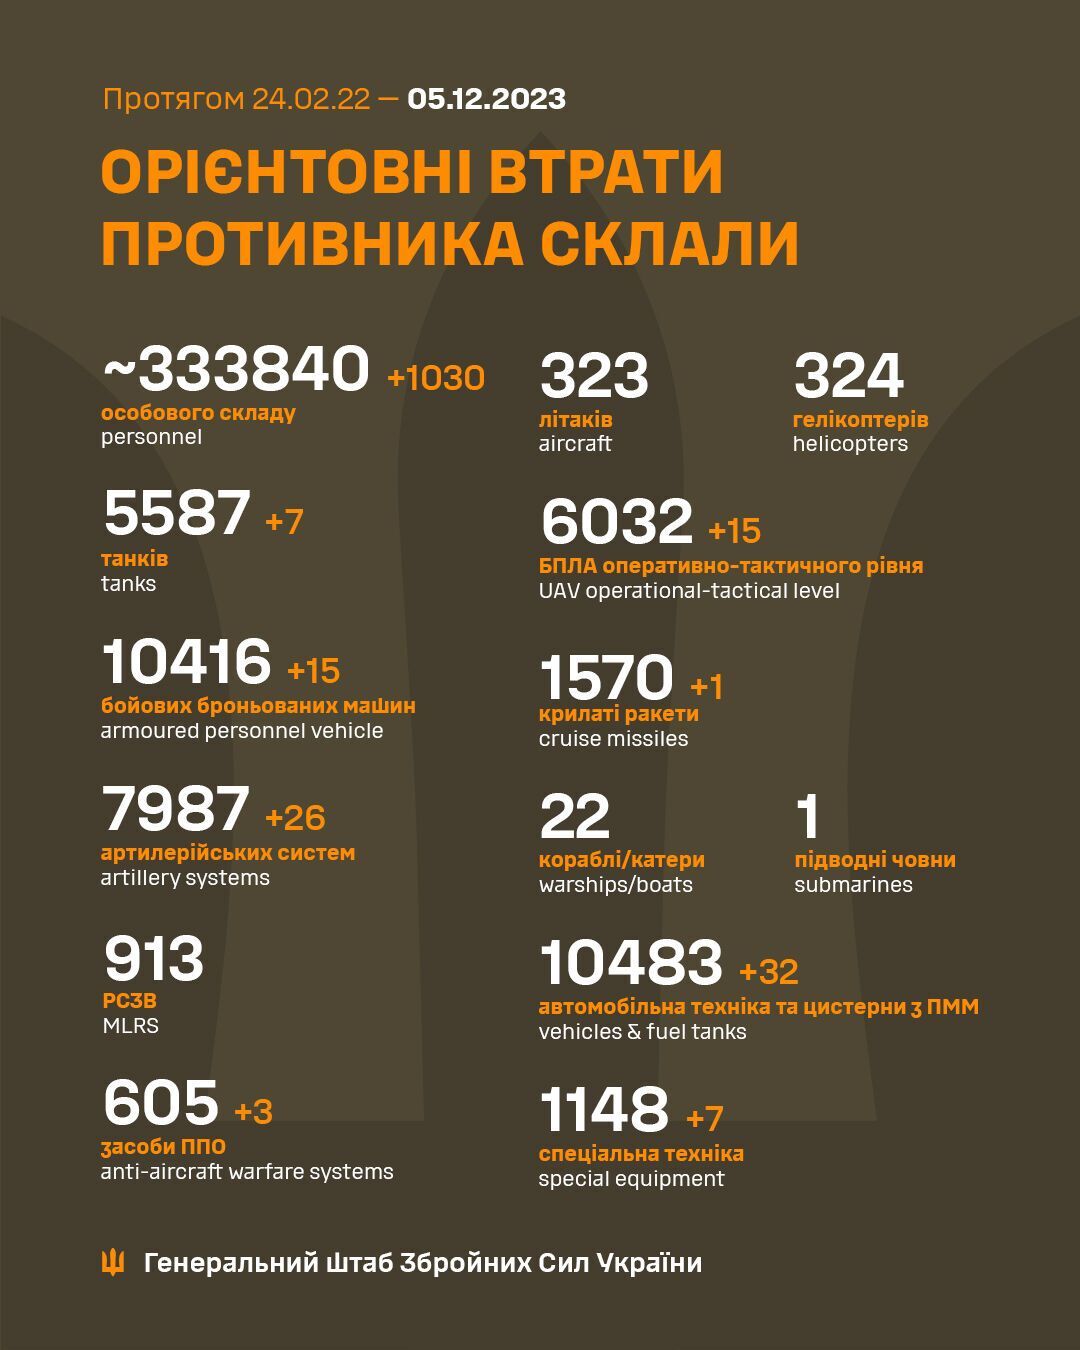 Воины ВСУ за сутки обезвредили 1030 оккупантов и 26 артсистем врага